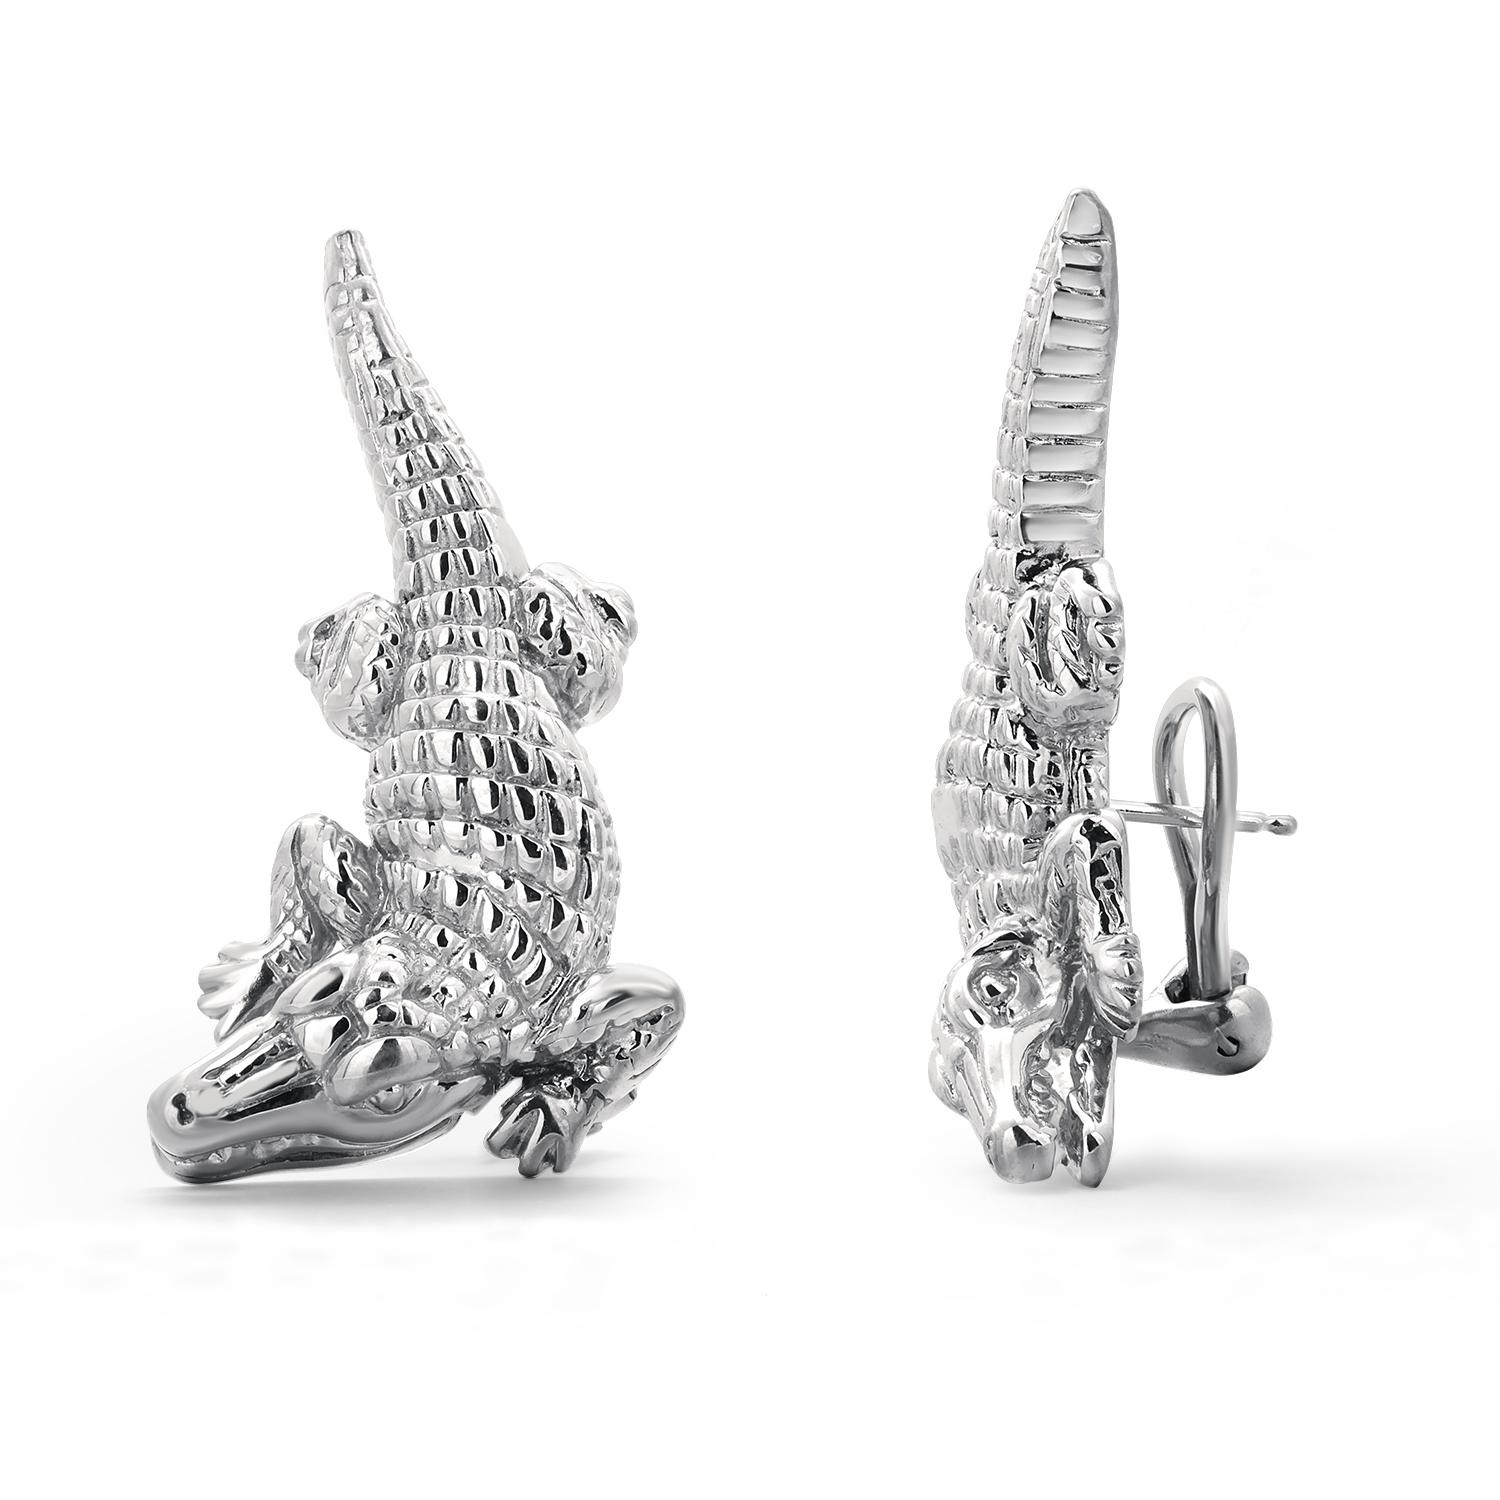 Barry Kieselstein-Cord Sterling Silver Alligator 1.5 Inch Long Earring 2